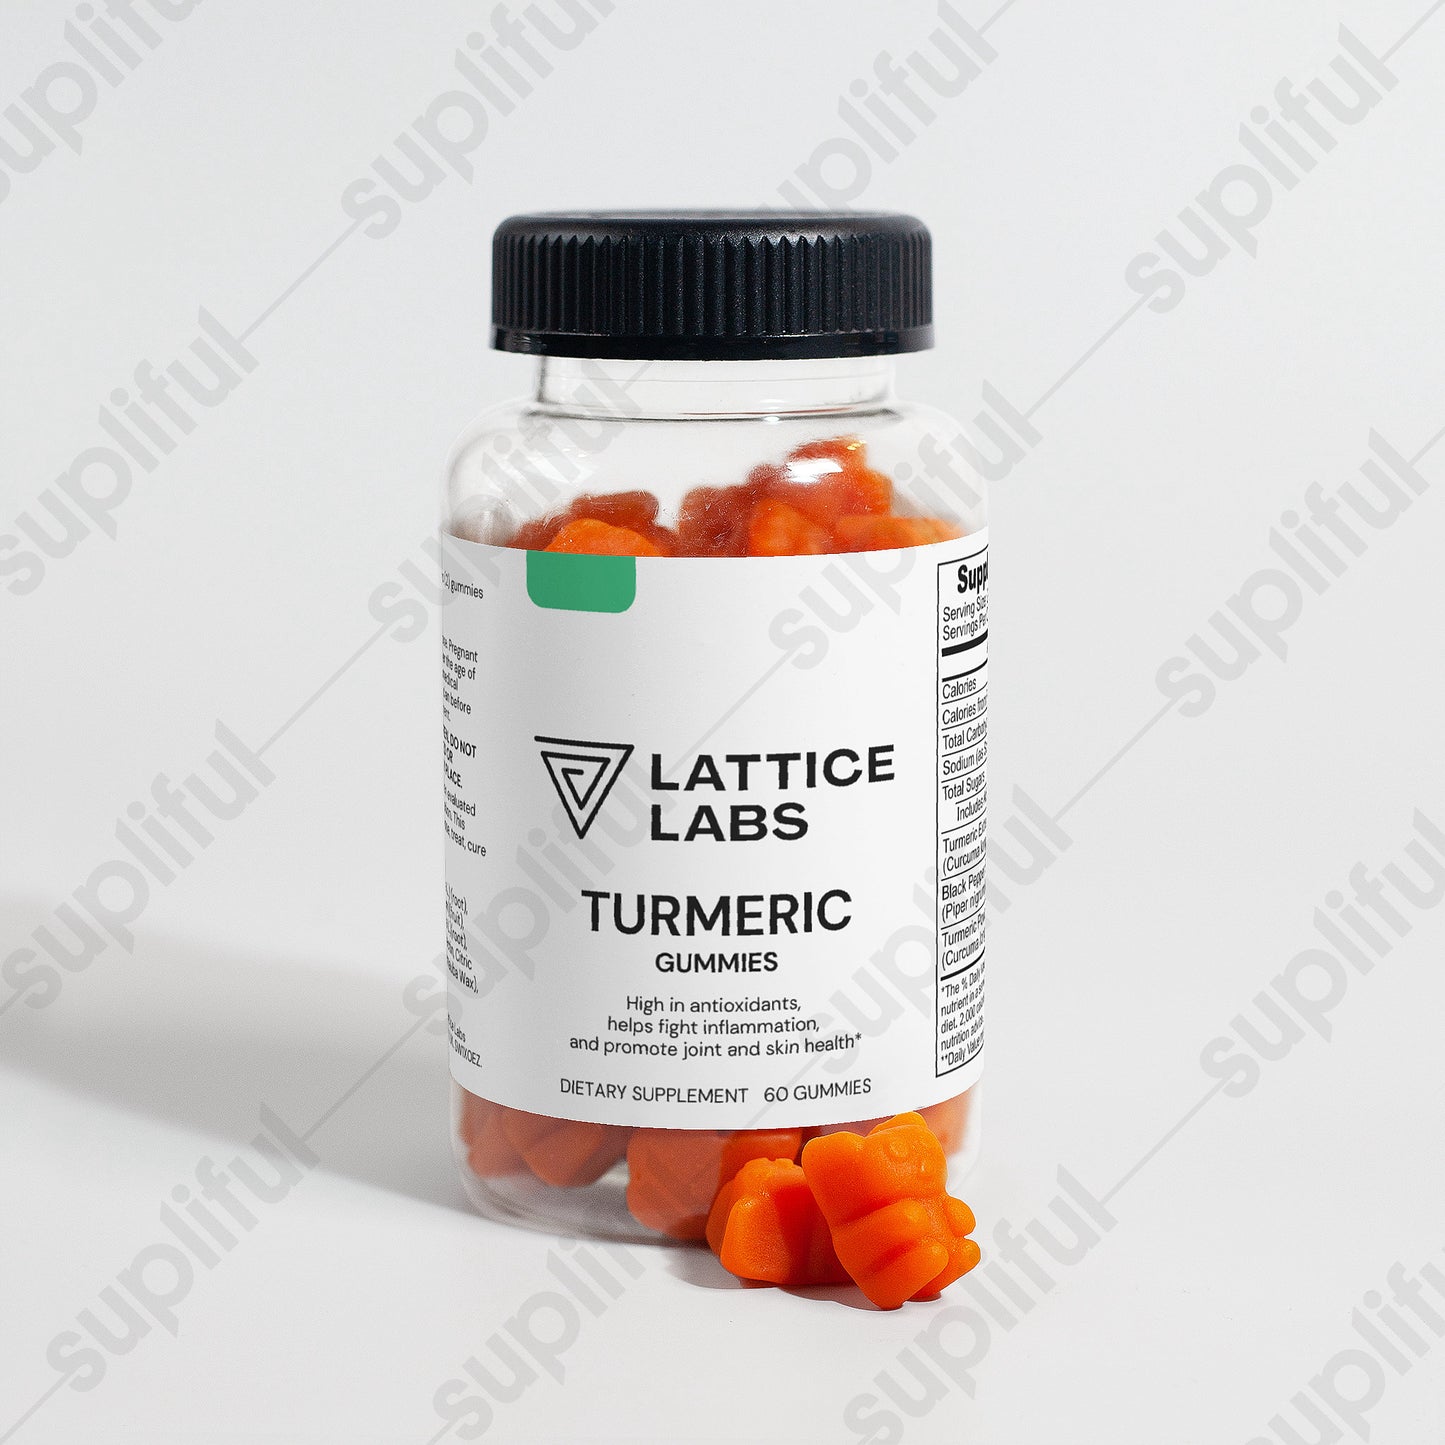 Lattice Labs Turmeric Gummies